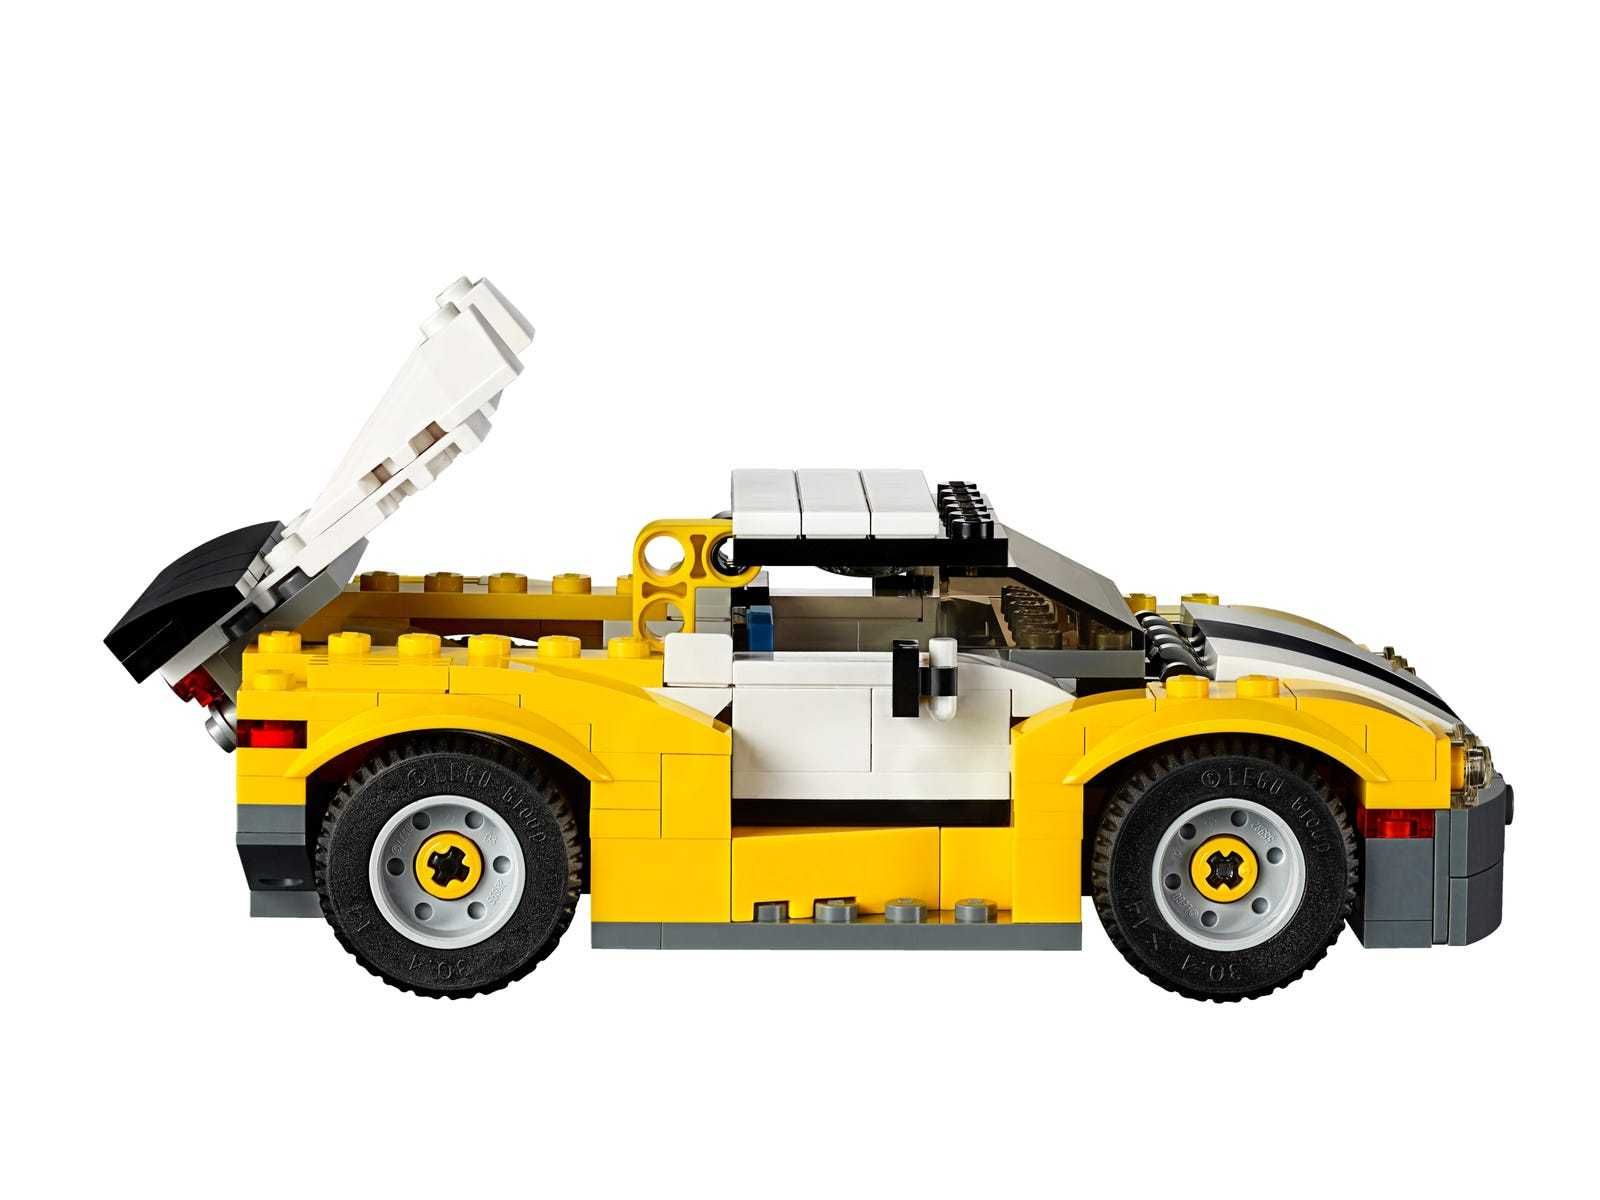 Конструктор Lego Creator - Бърза кола 3в1 (31046)